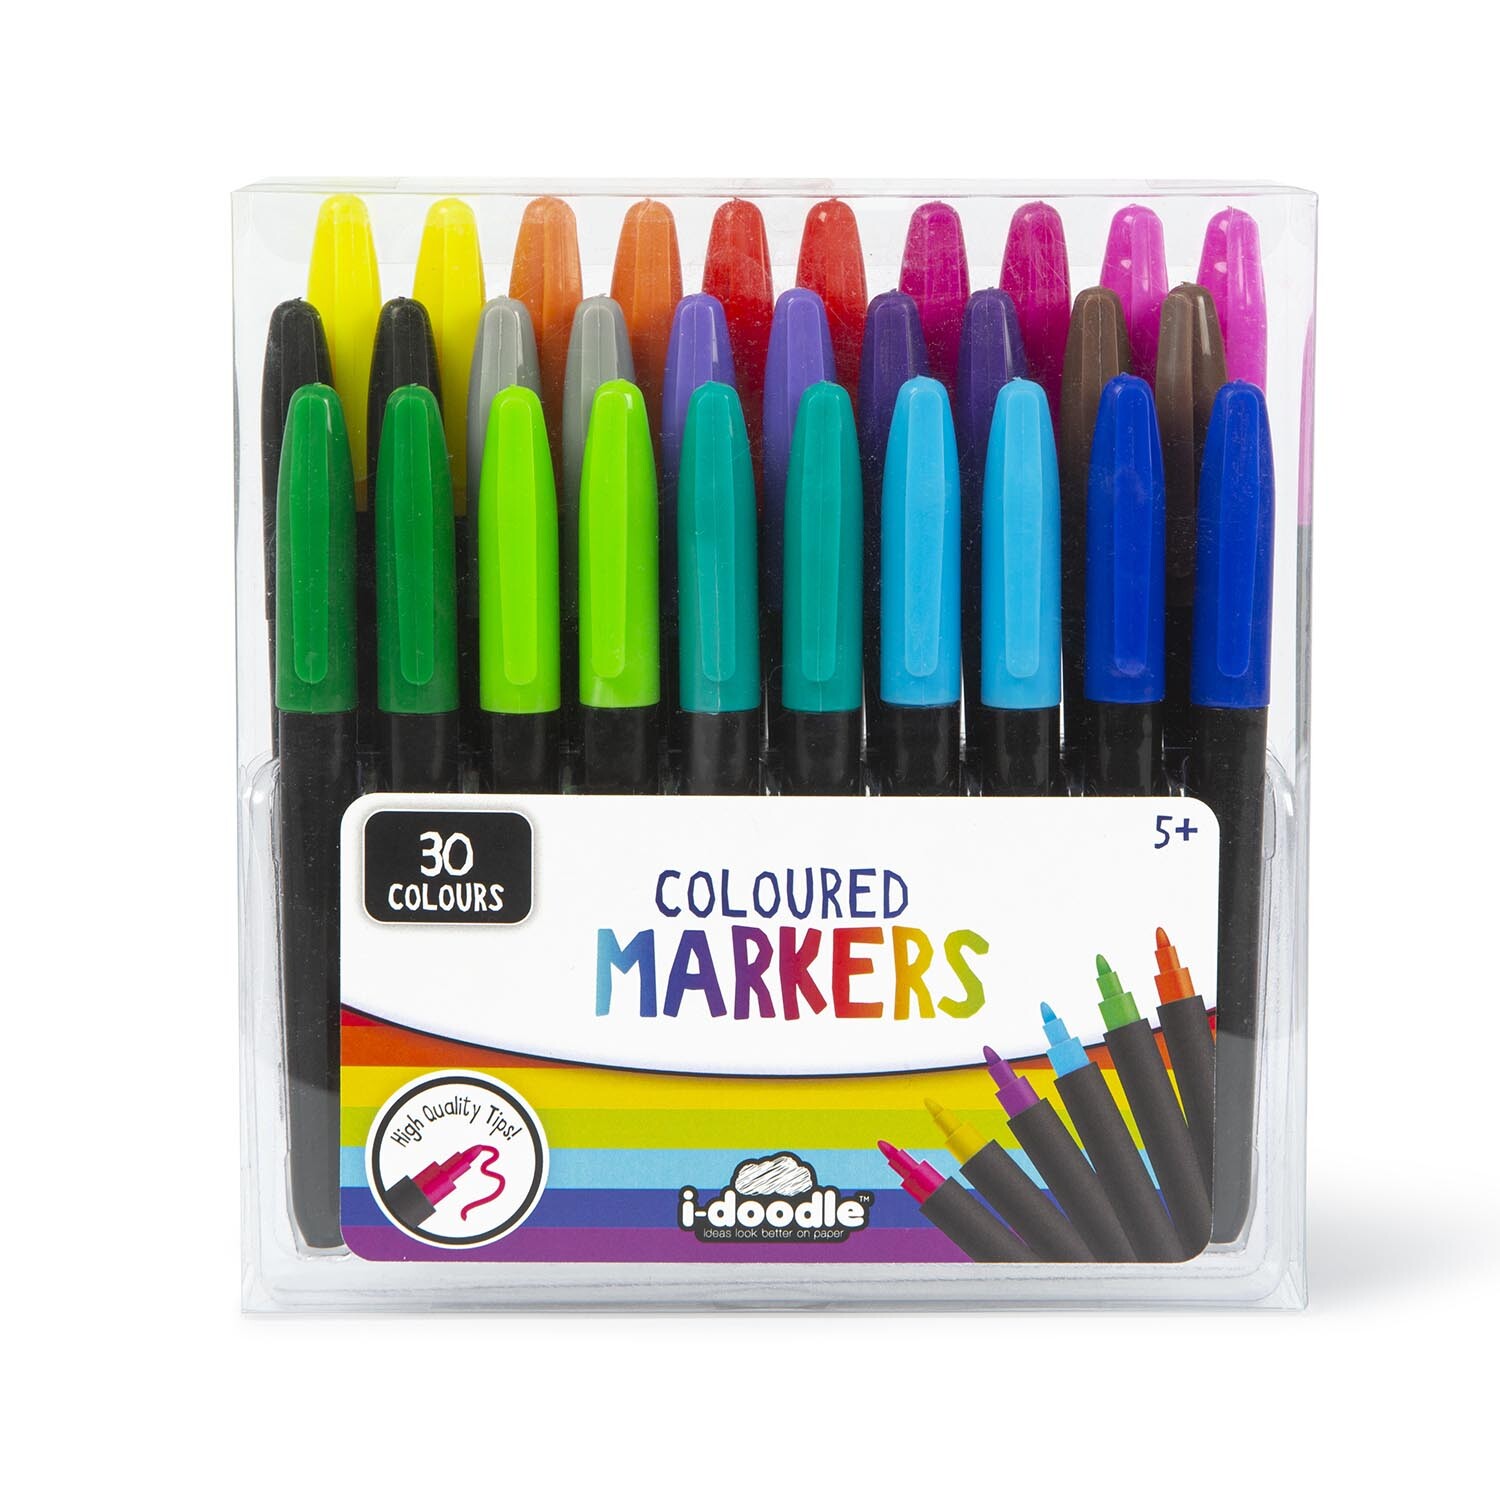 i-doodle Coloured Marker 30 Pack Image